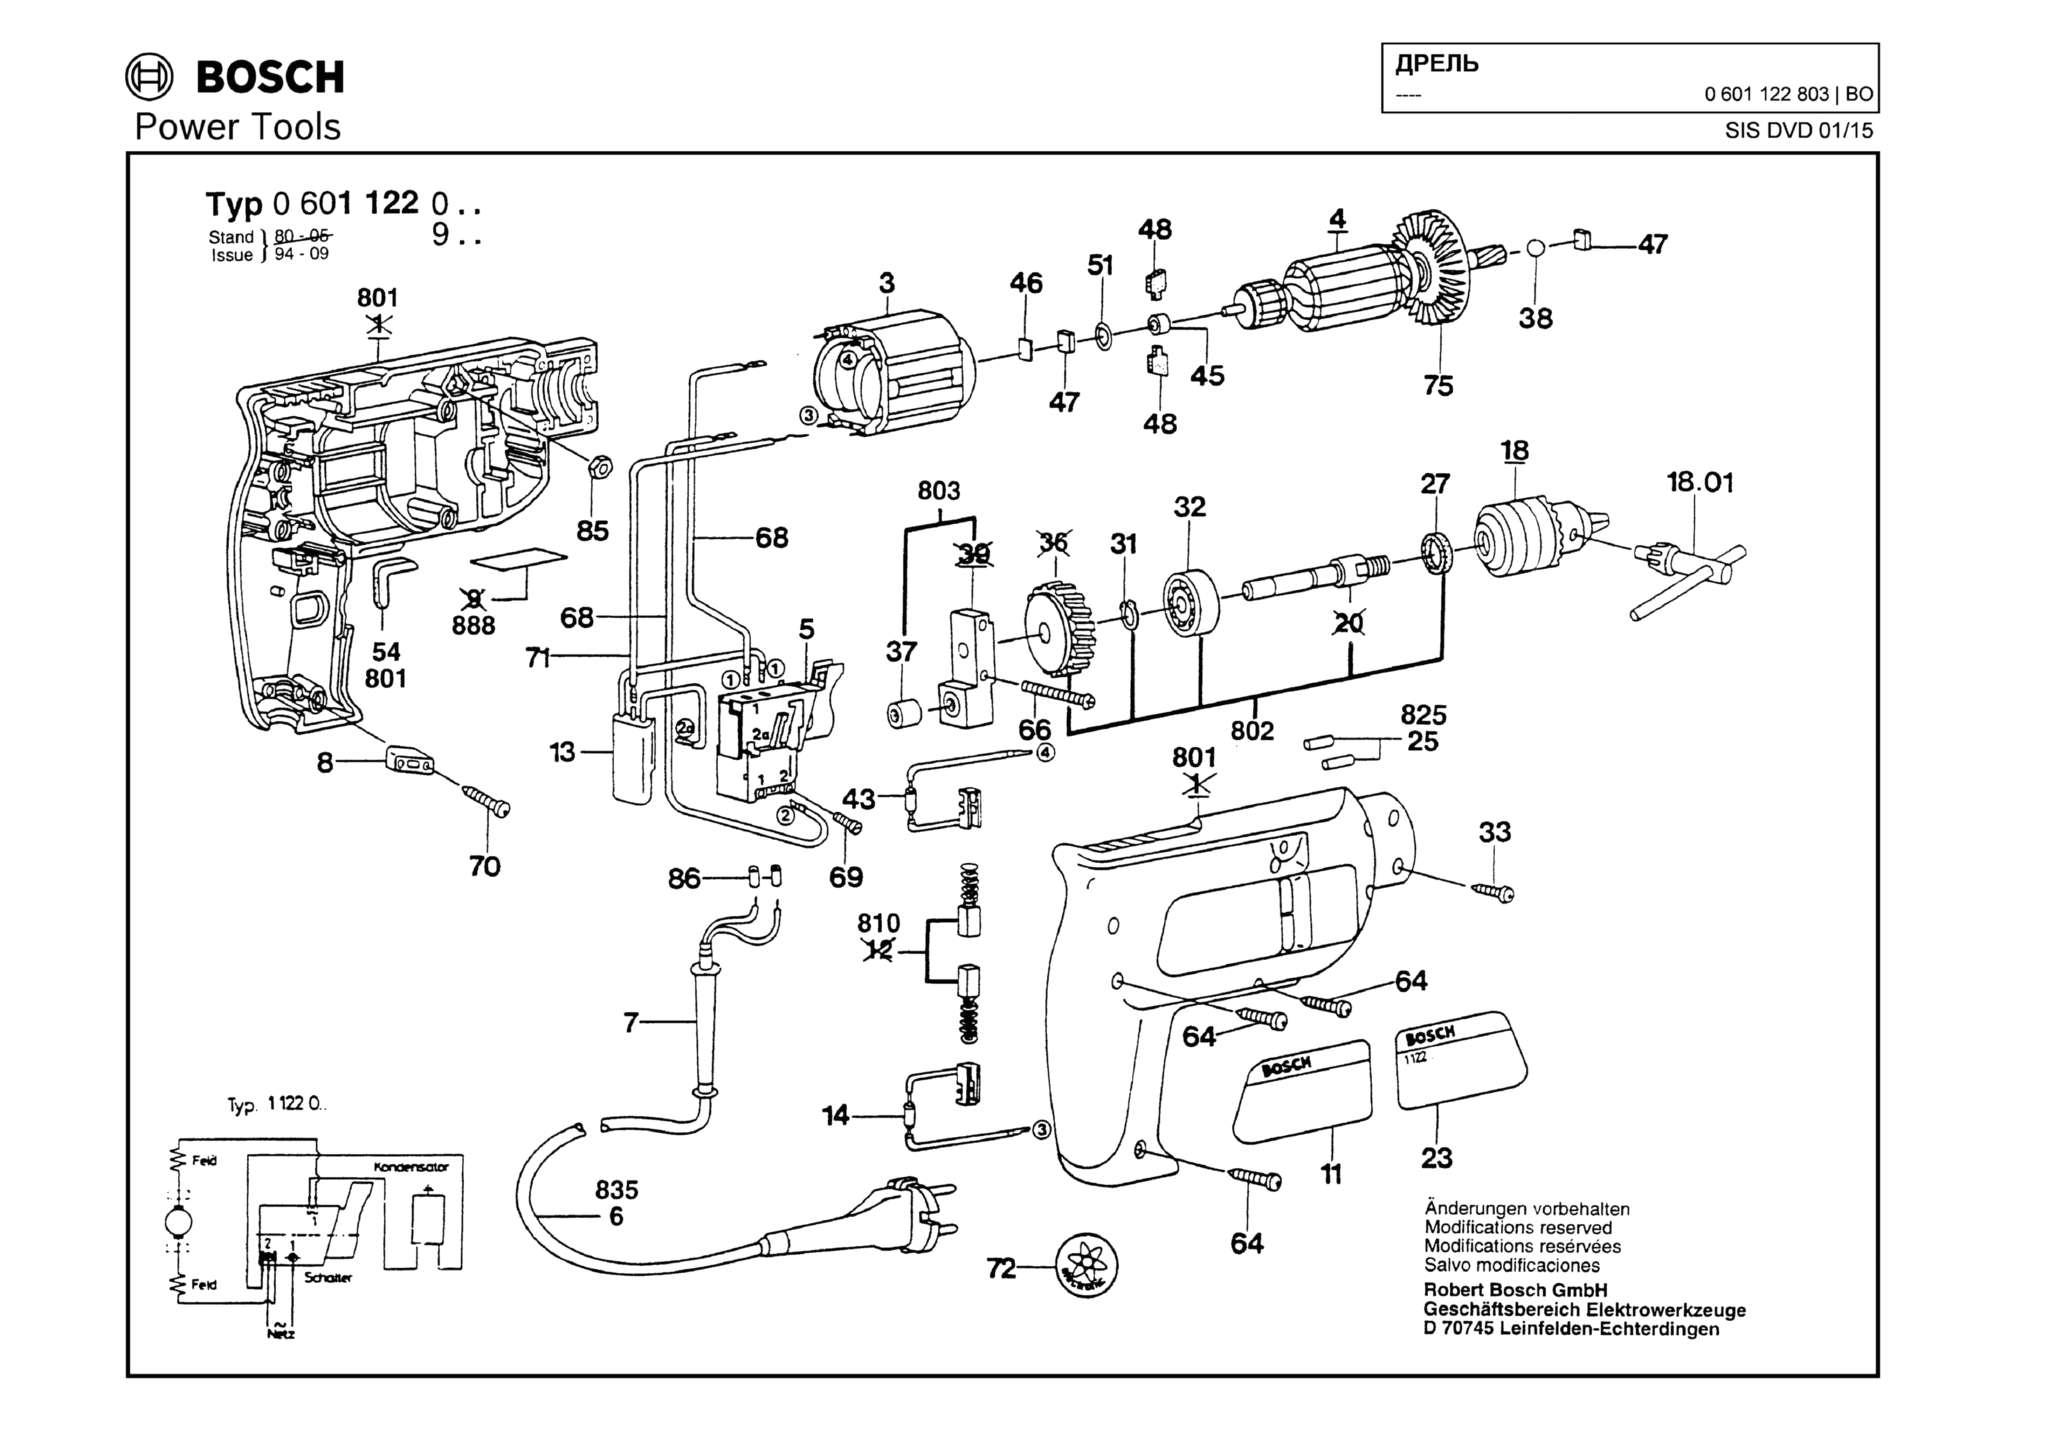 Запчасти, схема и деталировка Bosch (ТИП 0601122803)